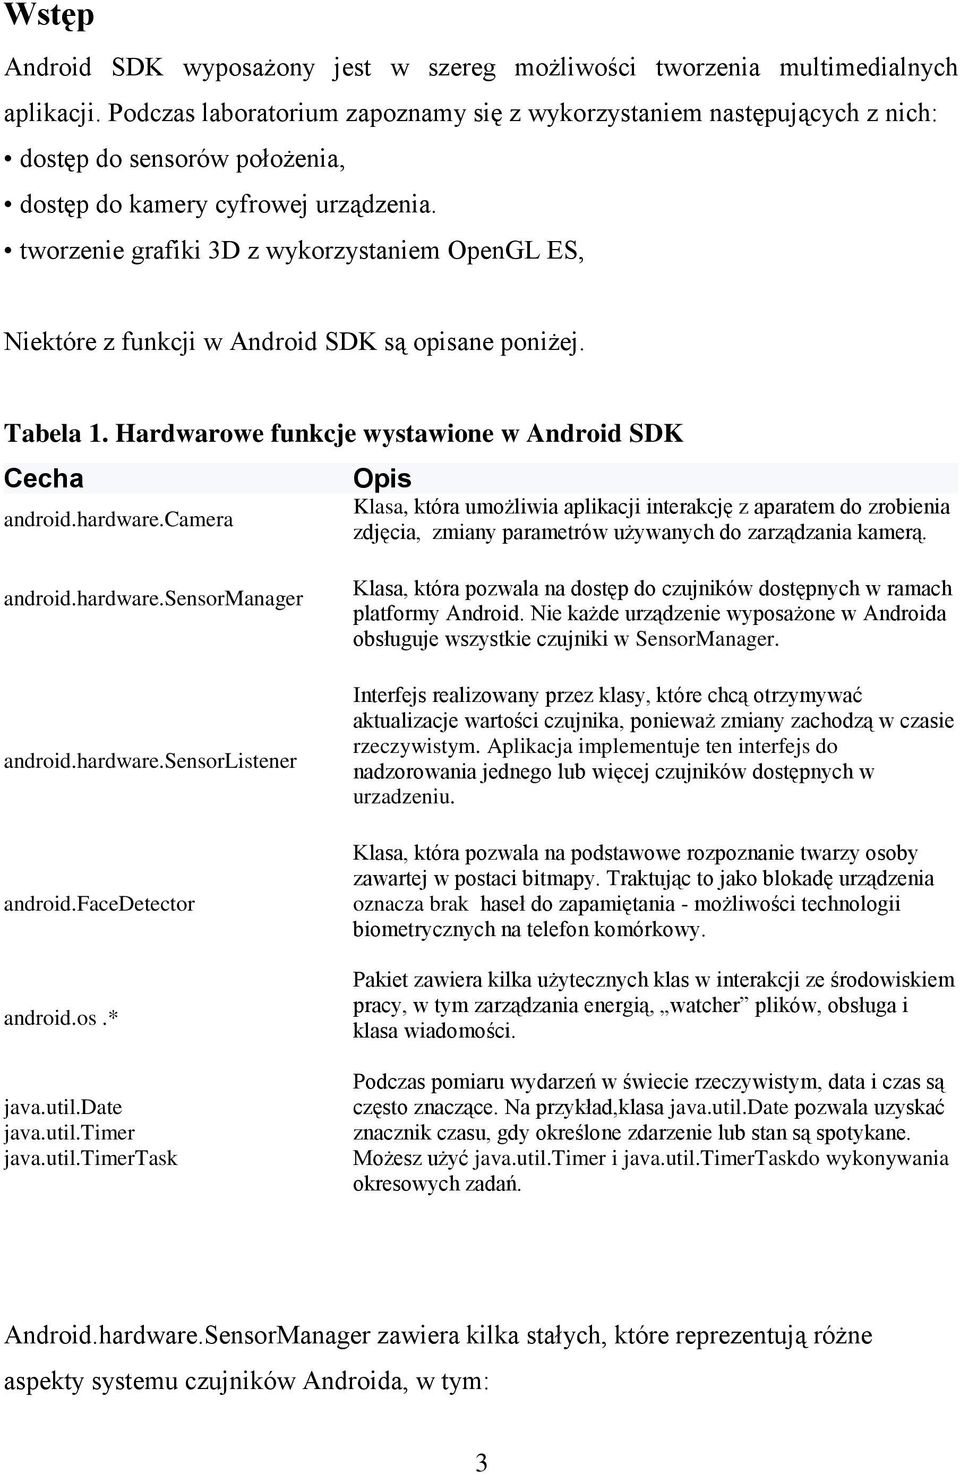 tworzenie grafiki 3D z wykorzystaniem OpenGL ES, Niektóre z funkcji w Android SDK są opisane poniżej. Tabela 1. Hardwarowe funkcje wystawione w Android SDK Cecha android.hardware.